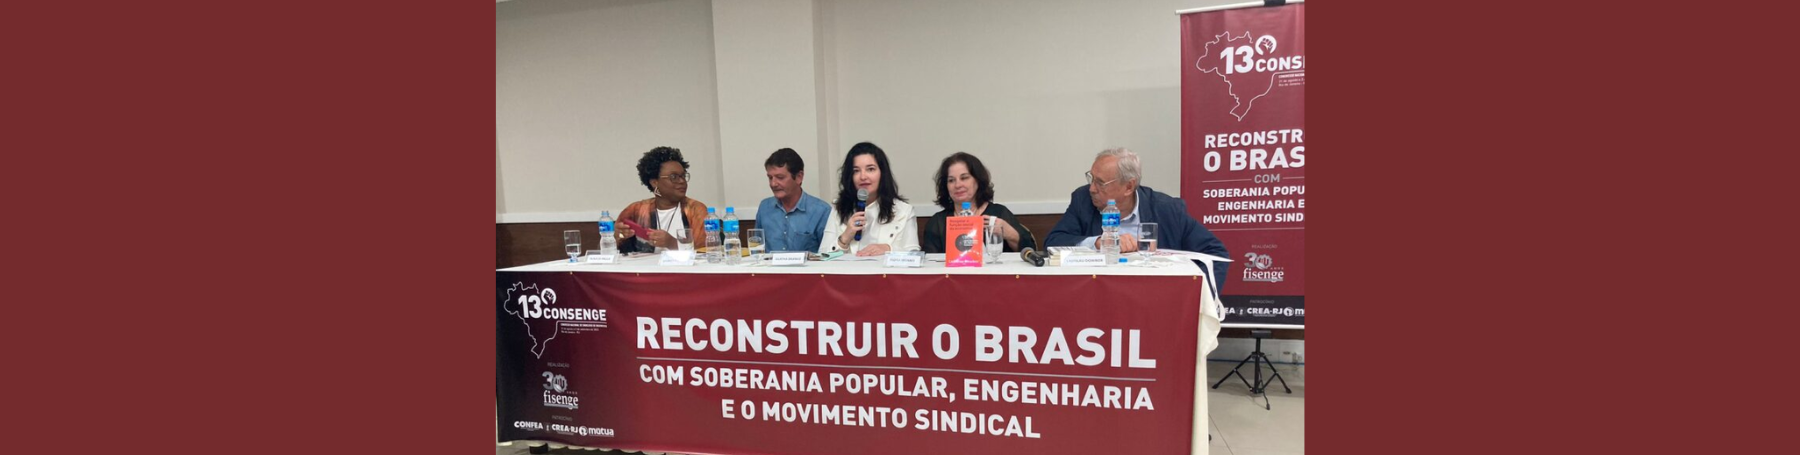 Reconstruções política, econômica, agrária e ambiental do Brasil são debatidas no Consenge